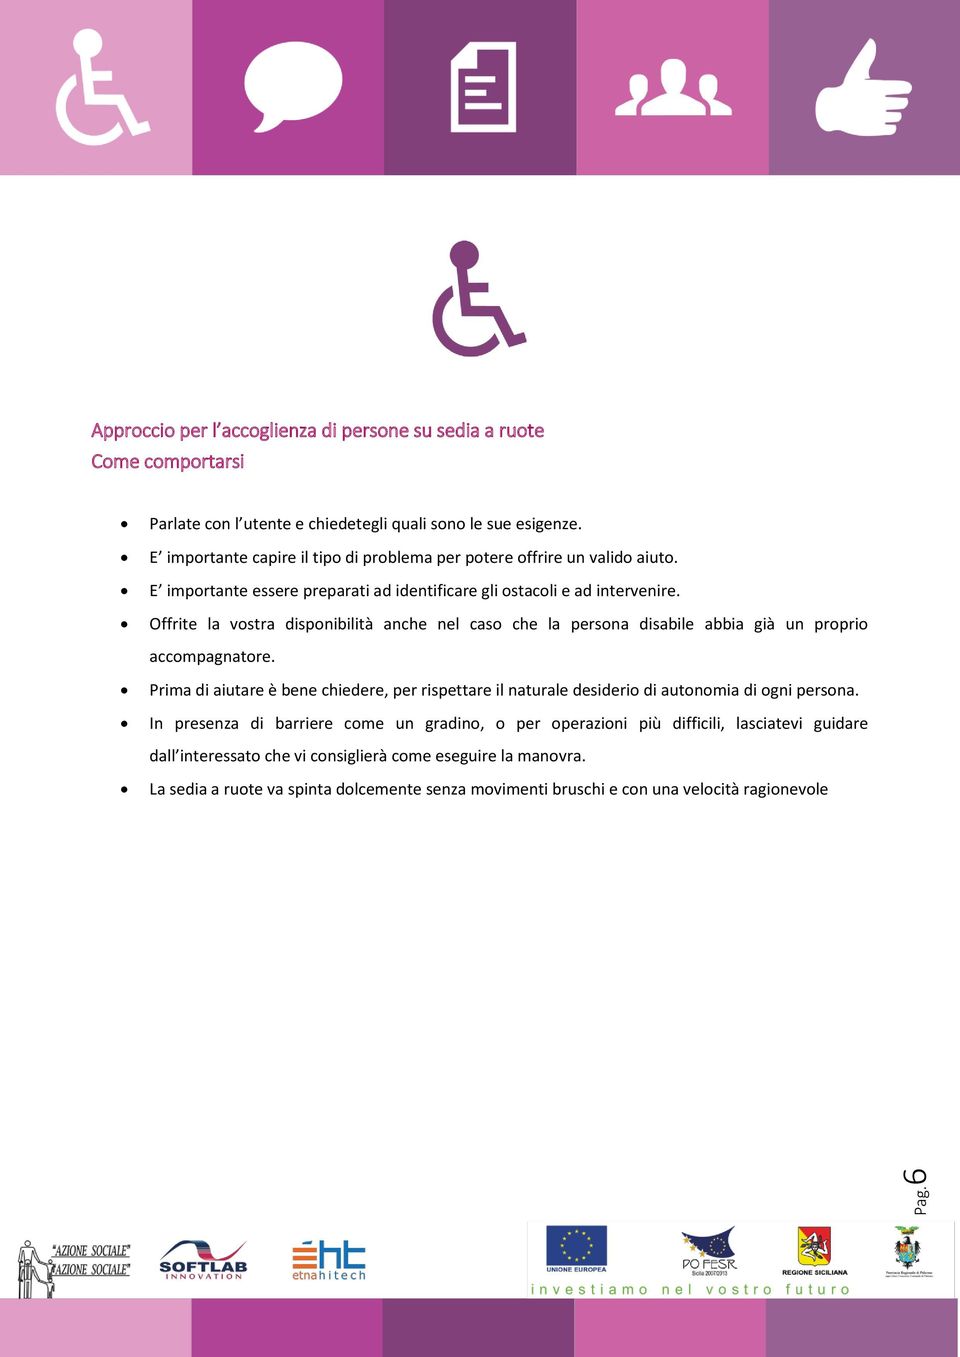 Offrite la vostra disponibilità anche nel caso che la persona disabile abbia già un proprio accompagnatore.